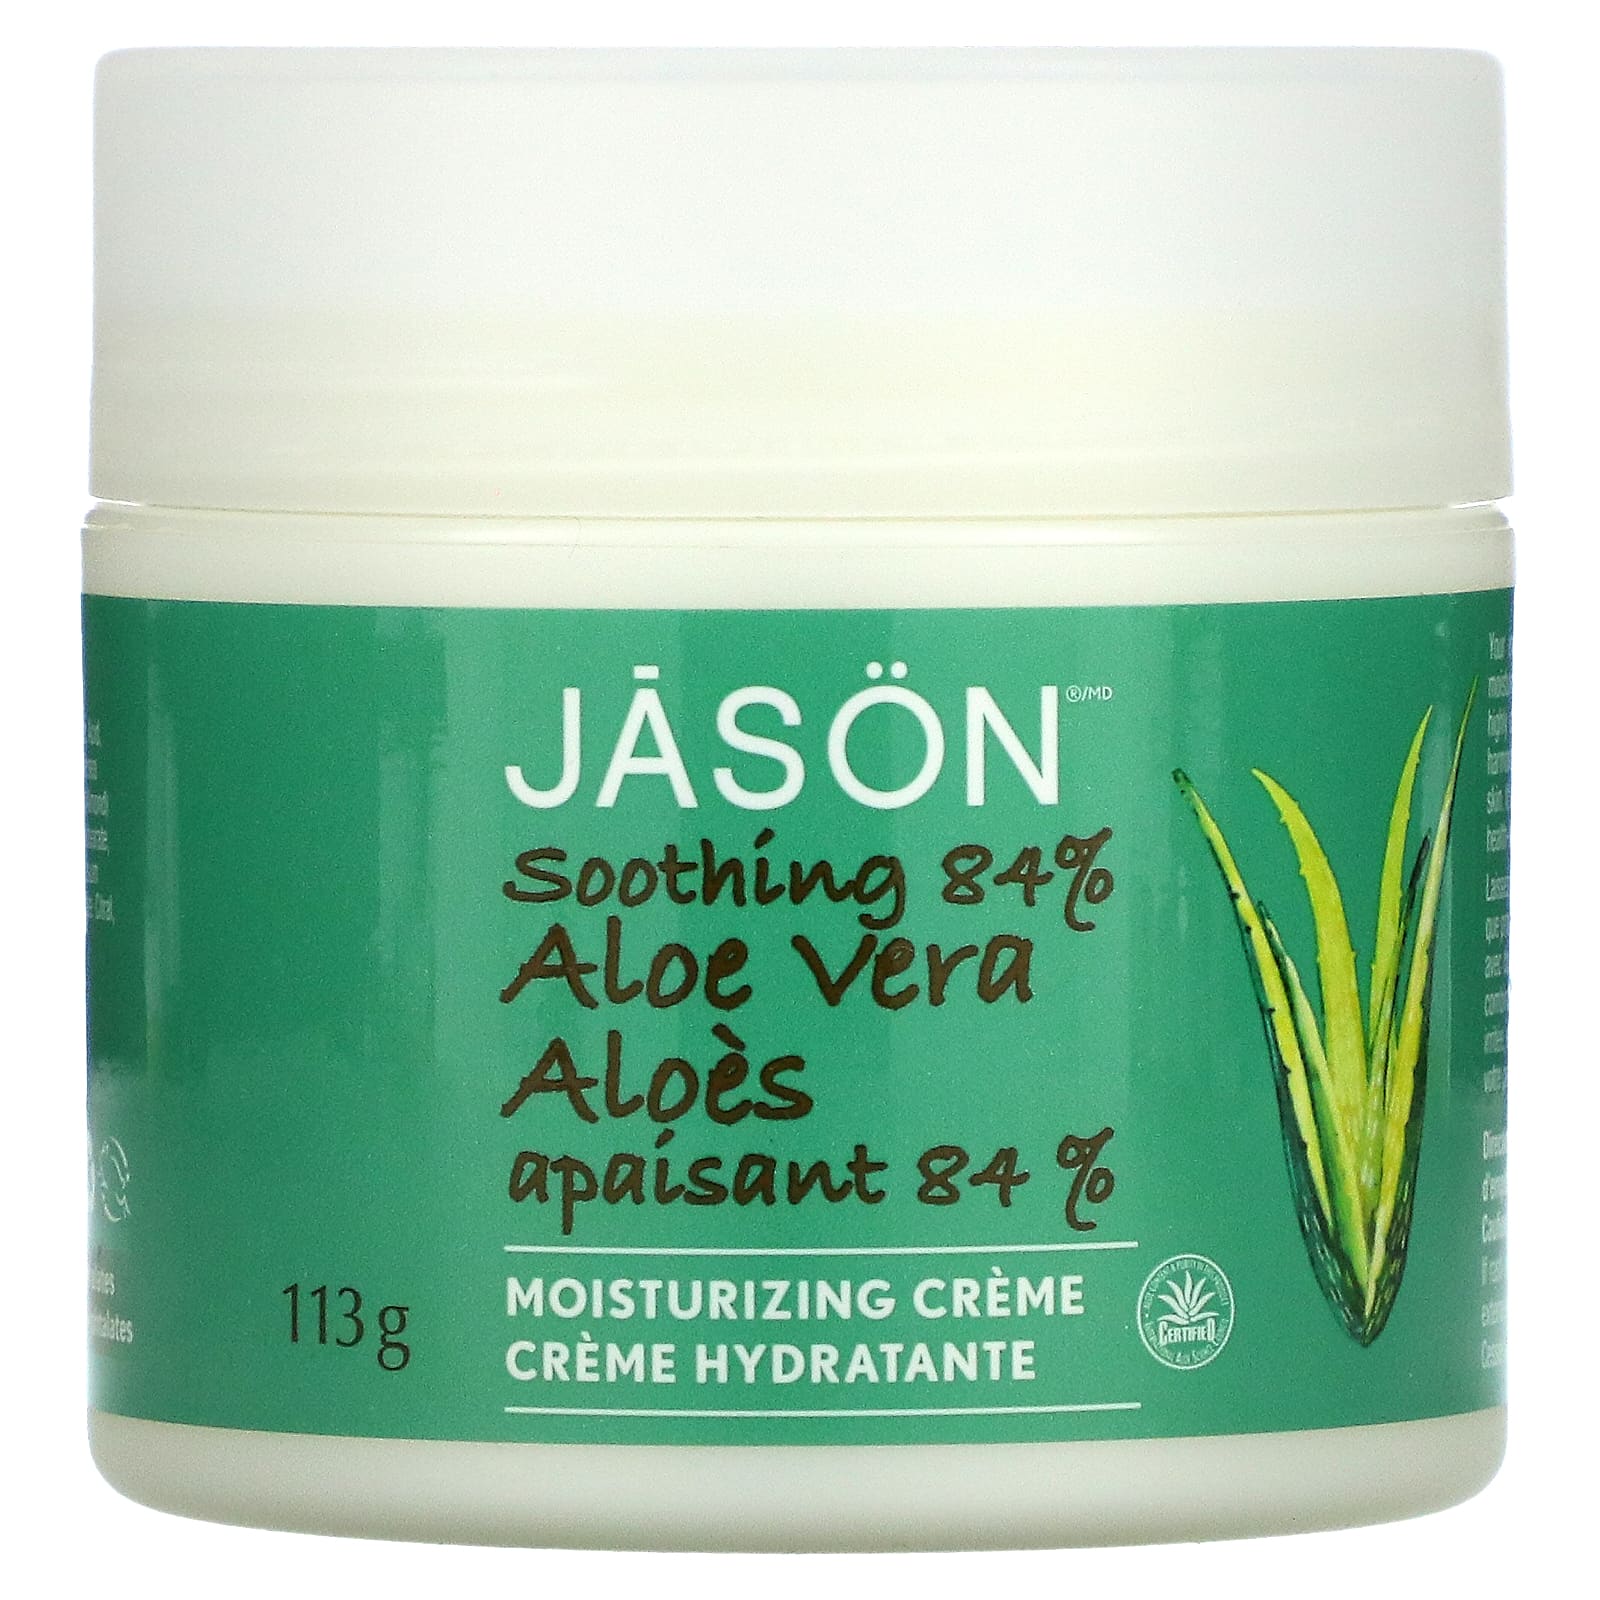 Jason Natural Aloe Vera 84% Moisturizing Creme Soothing 4 oz (113 g) цена и фото